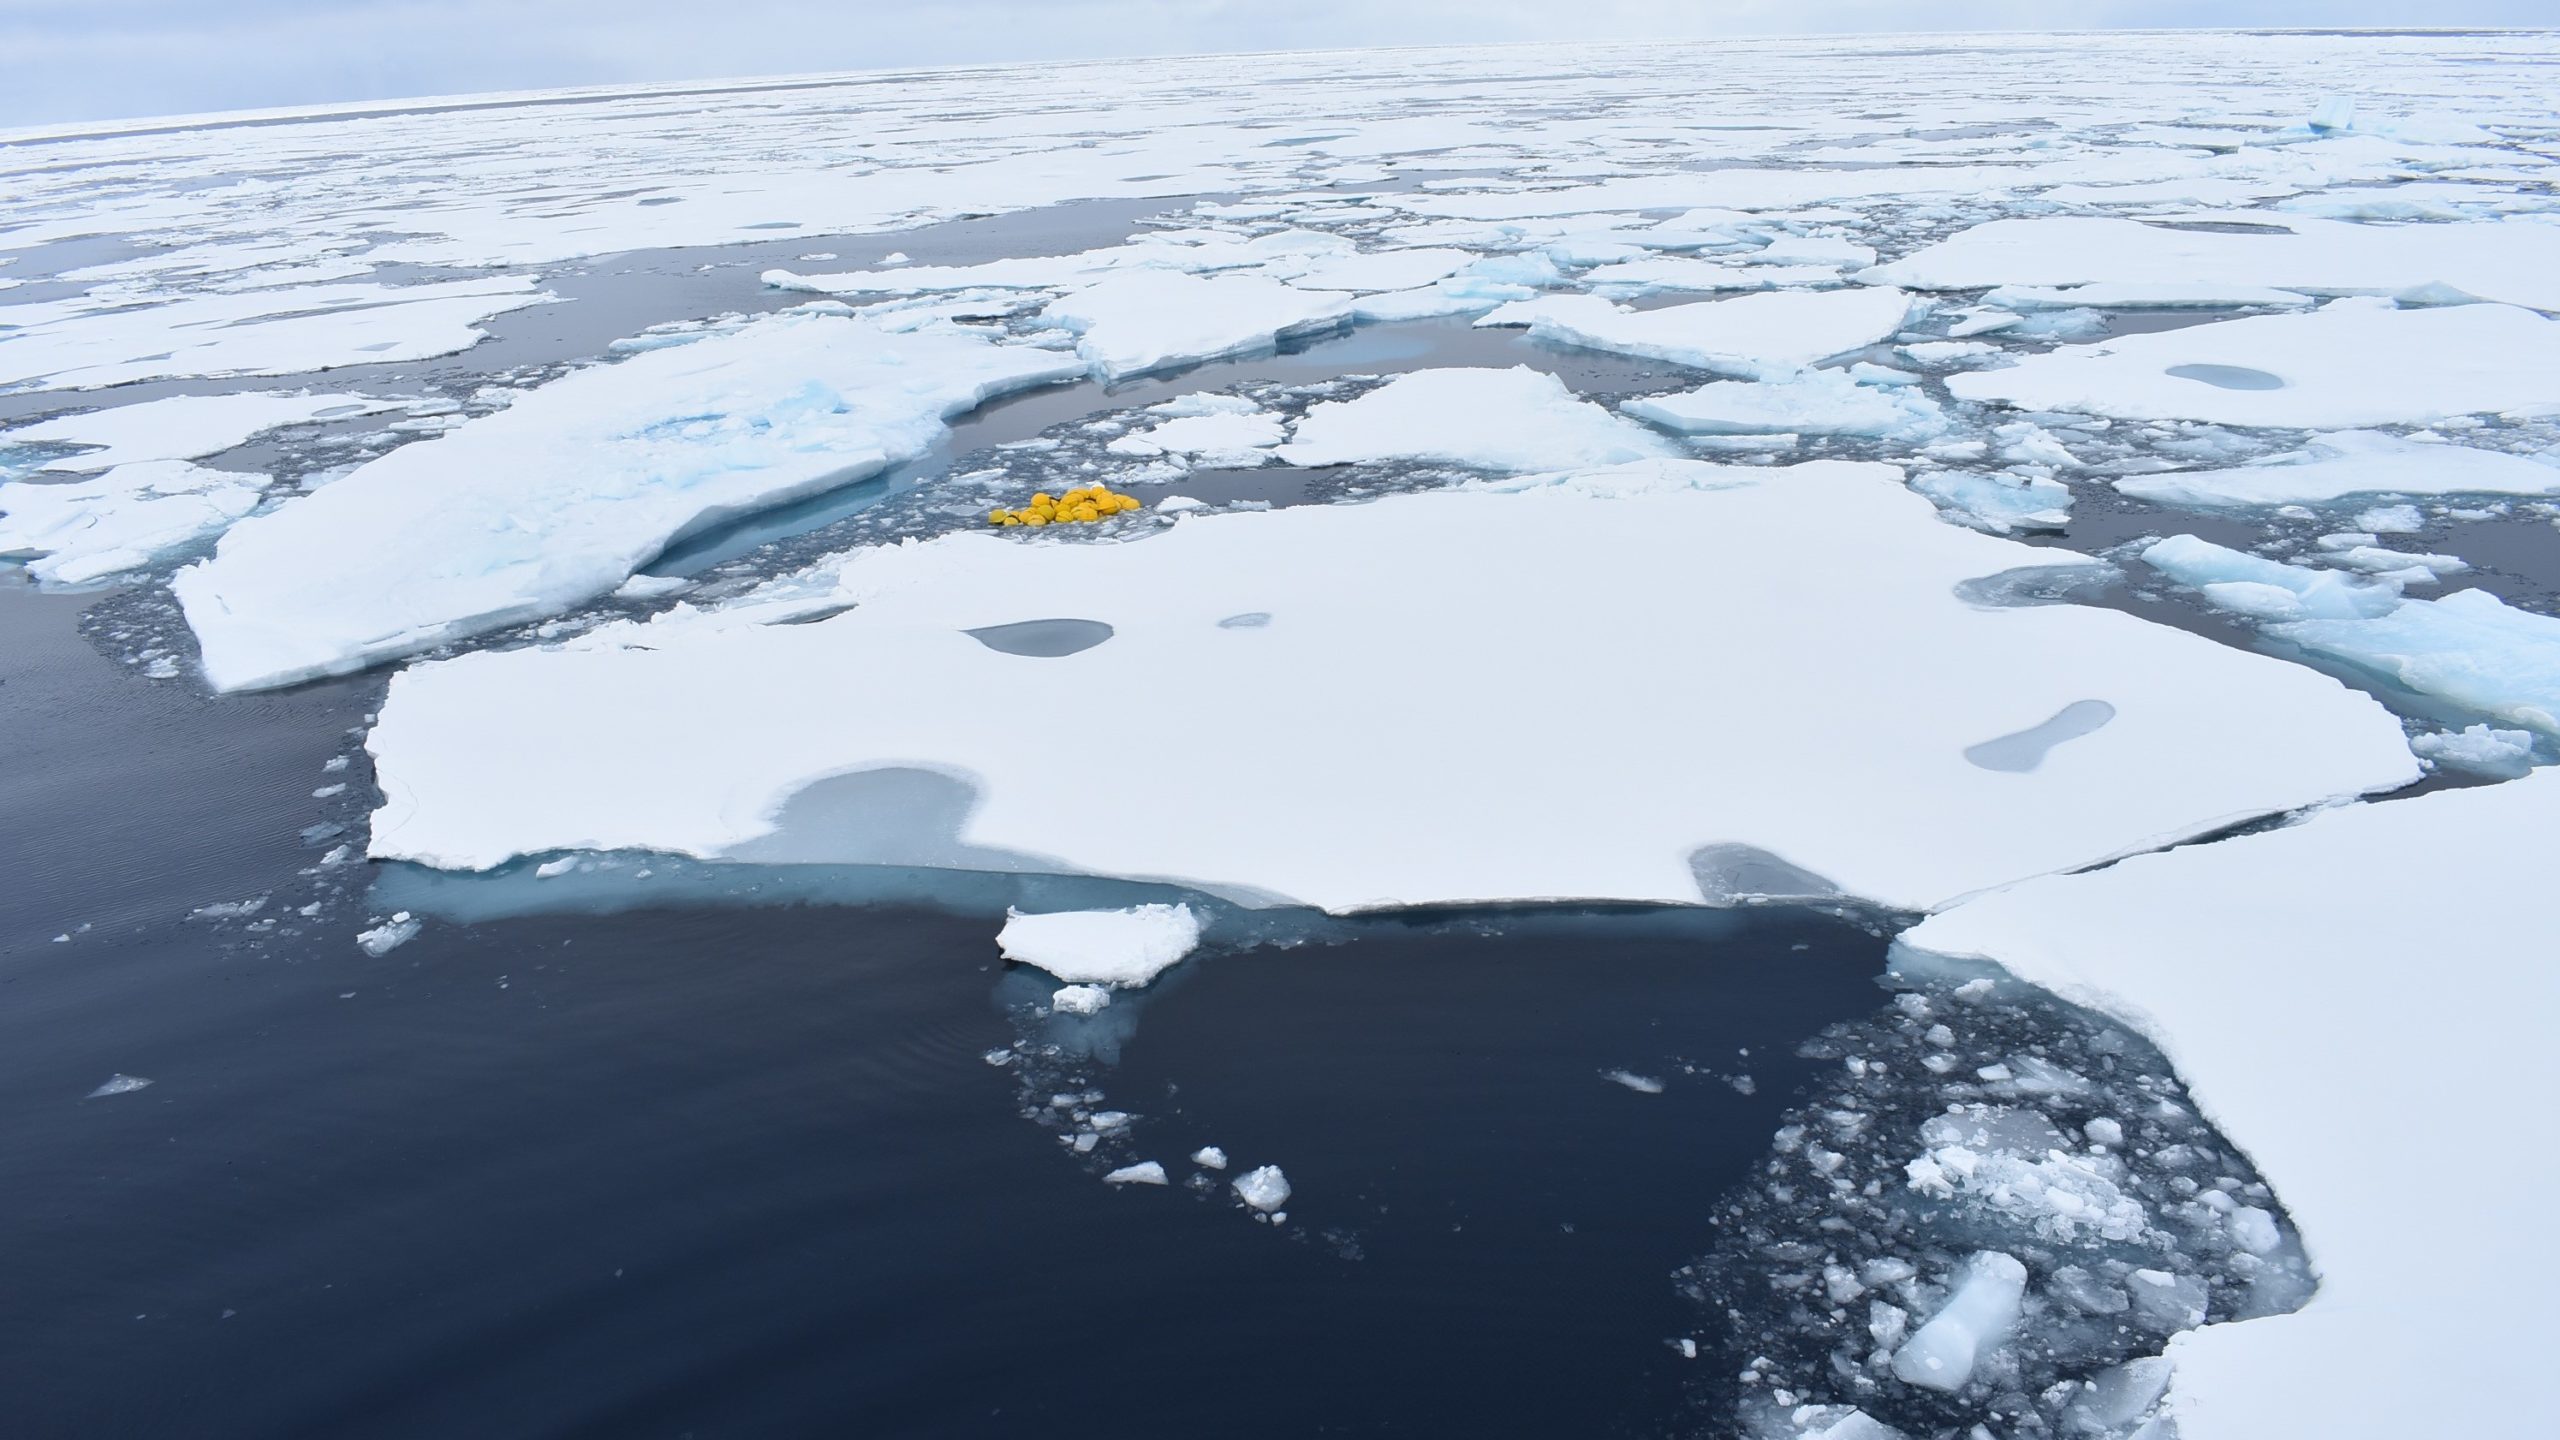 Yellow moorings in sea ice